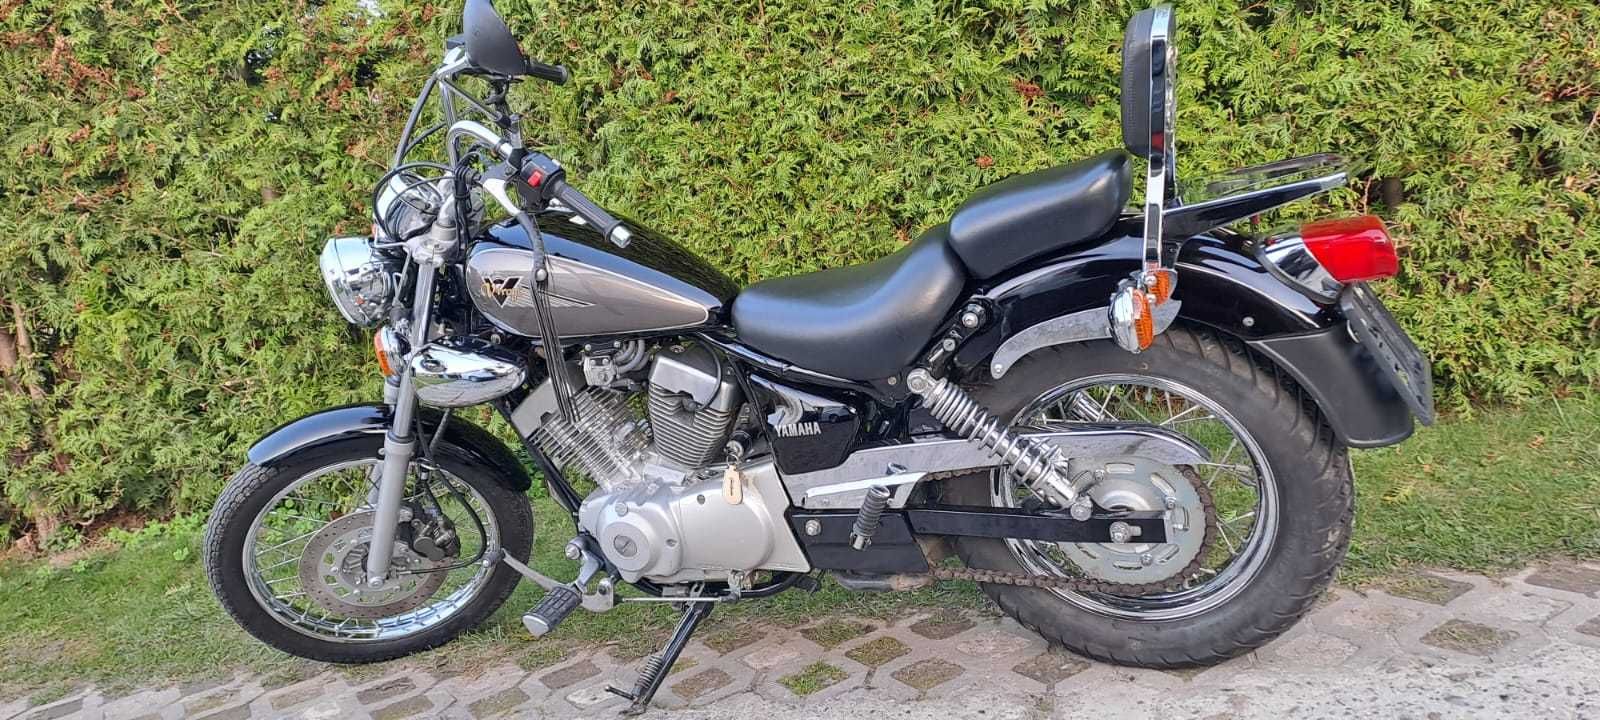 Motocykl Yamaha Virago sprowadzony z zagranicy.